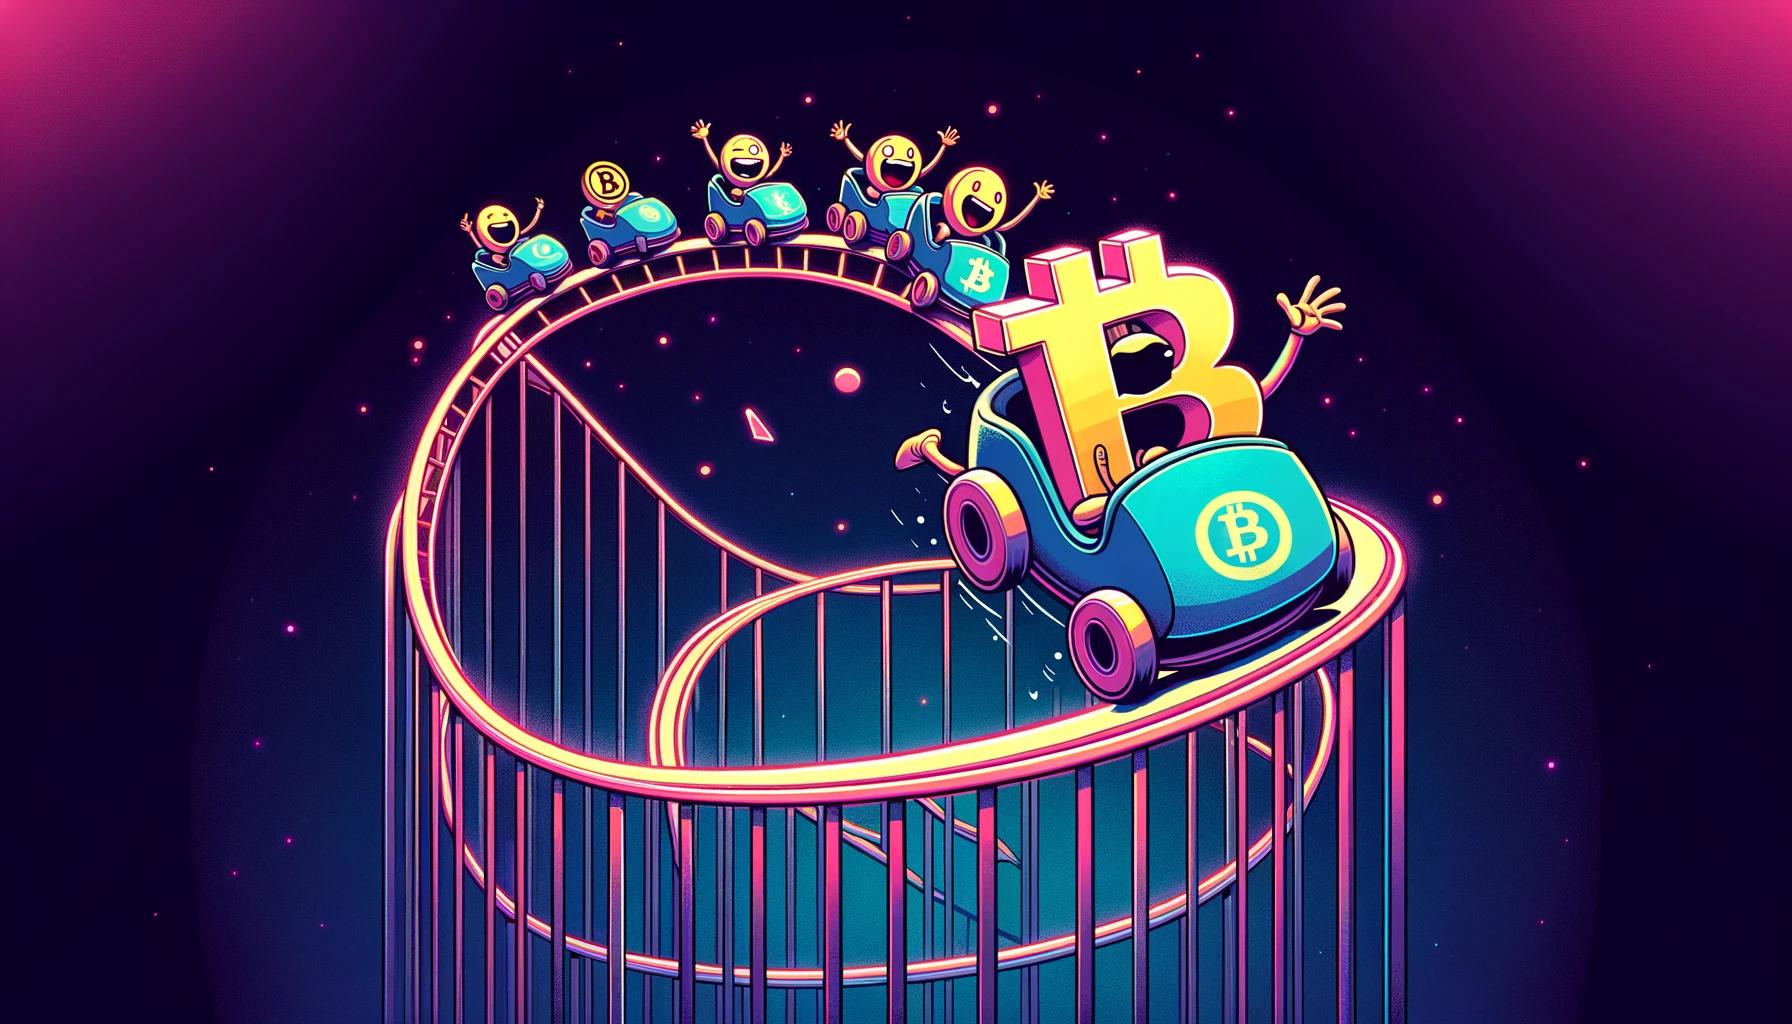 crypto-markets-reverse-sharply-after-bitcoin-tags-usd70-000